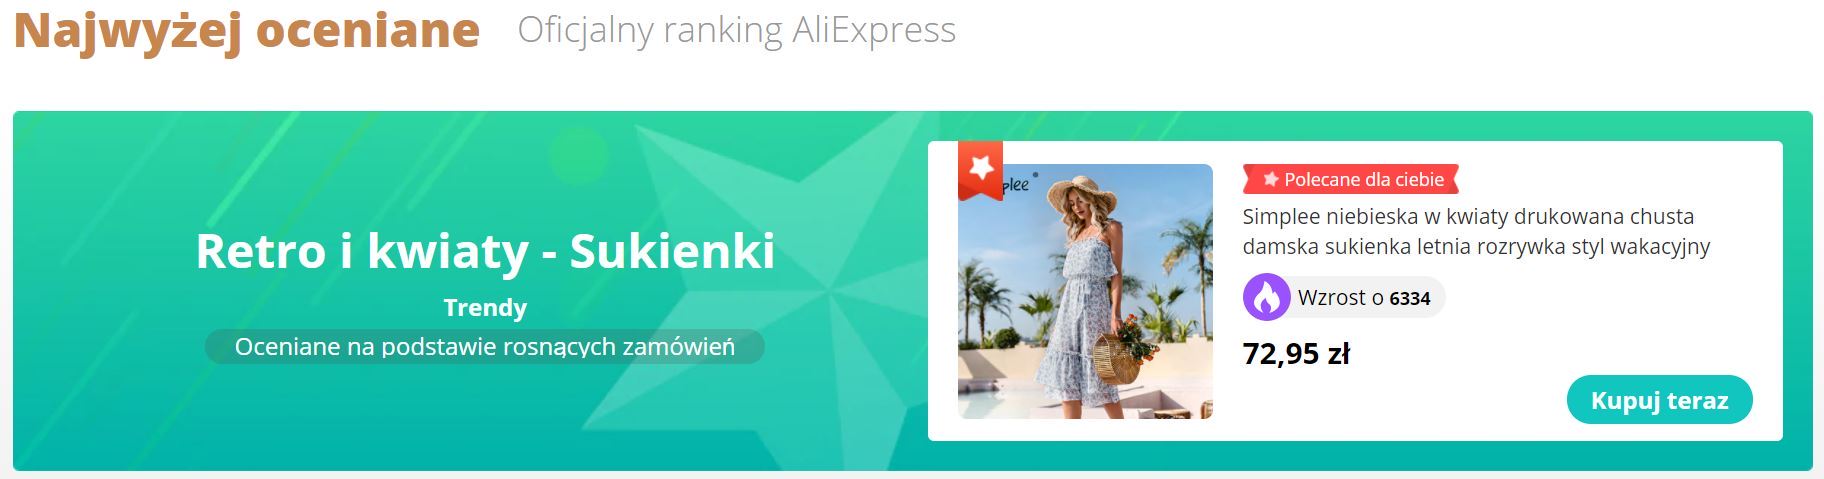 Odkrywaj trendy - nowa promocja Aliexpress - ranking sukienek z Aliexpress